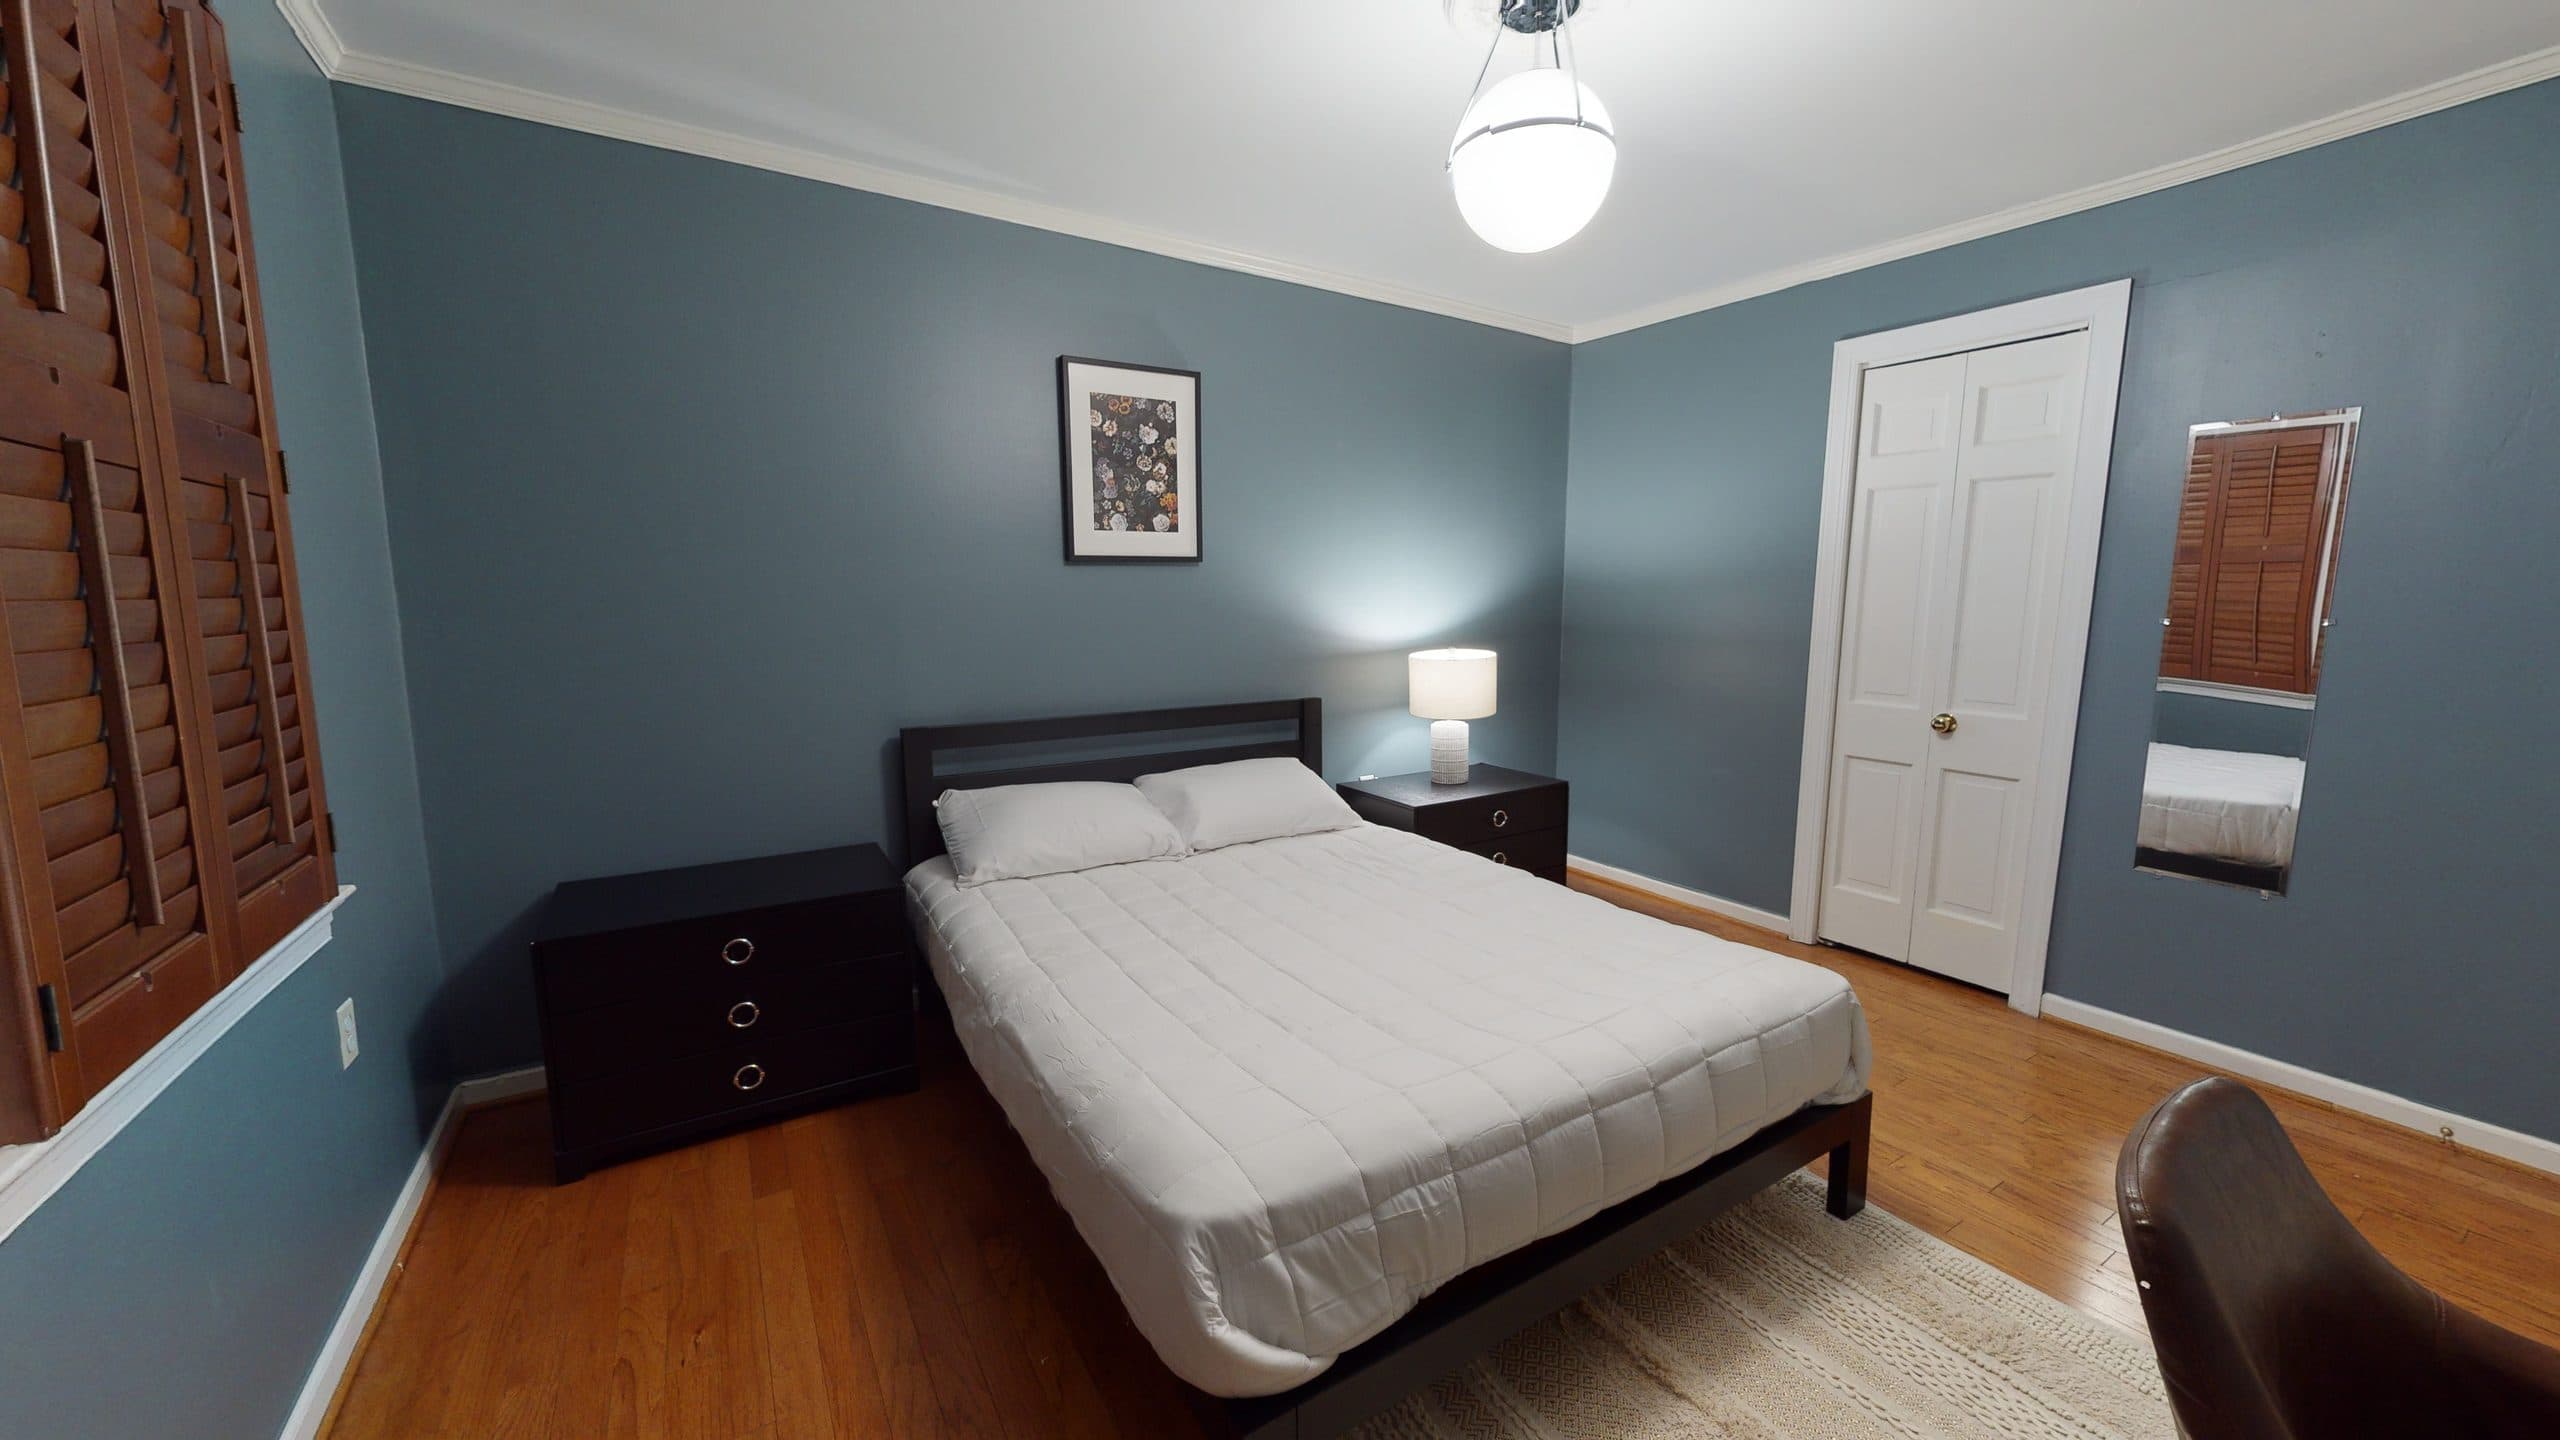 Photo 12 of #1428: Queen Bedroom 2C at June Homes